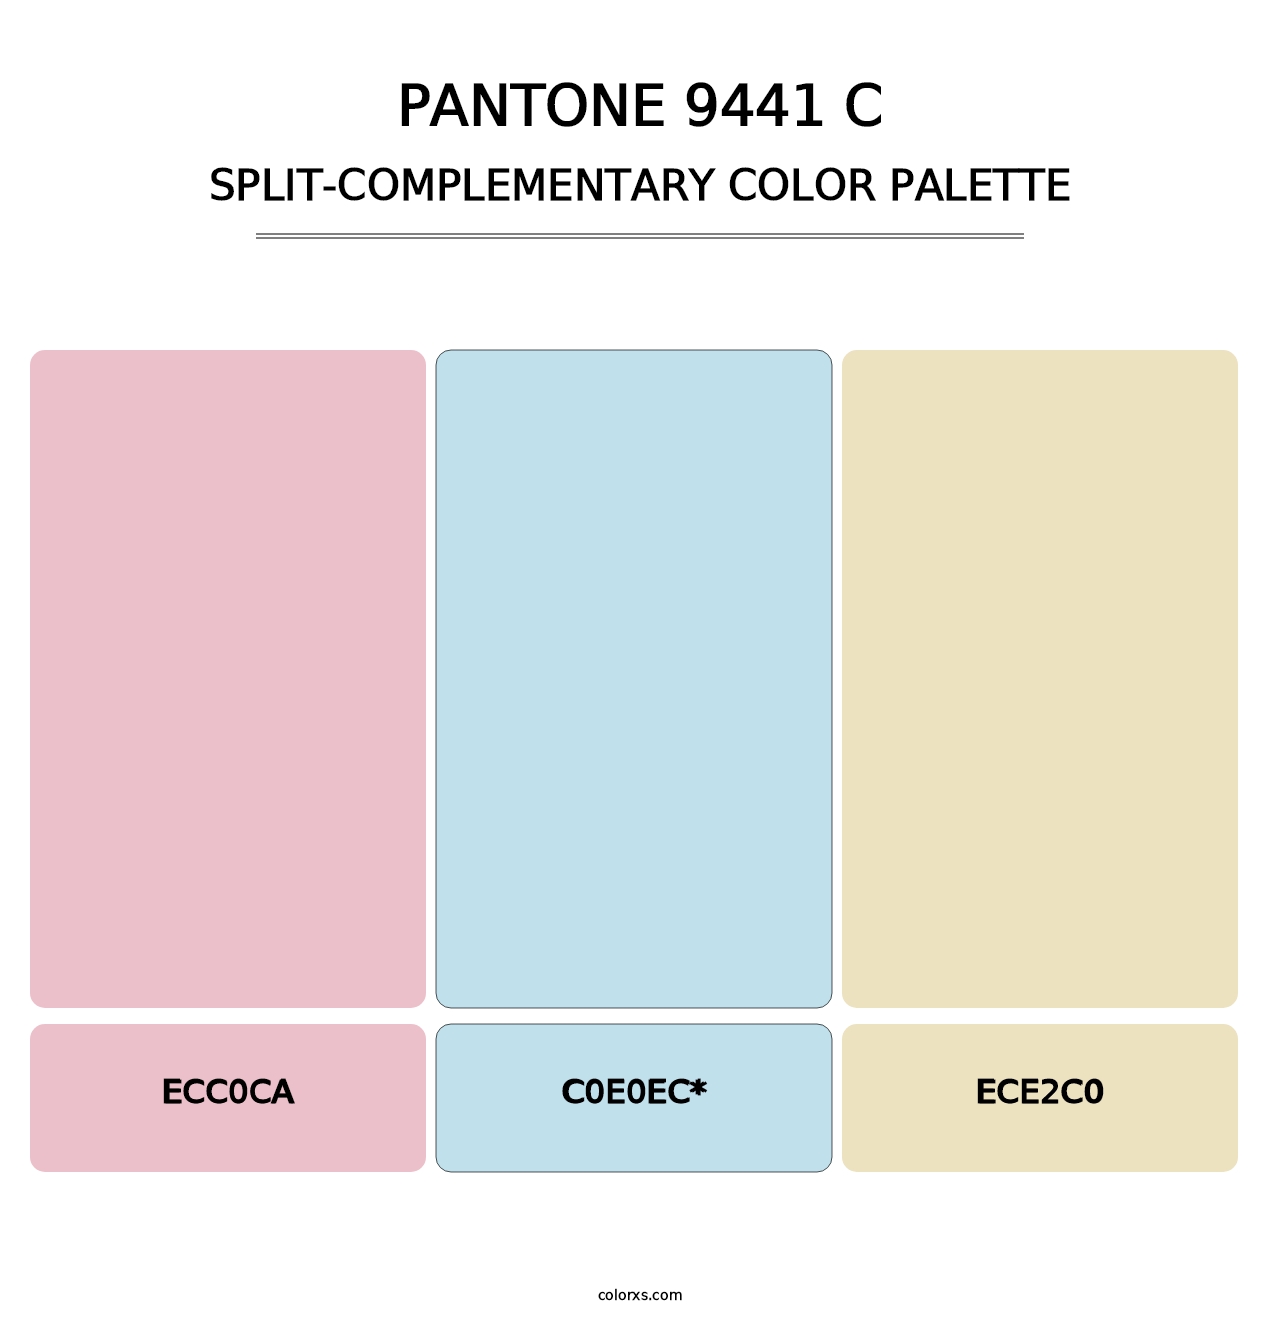 PANTONE 9441 C - Split-Complementary Color Palette